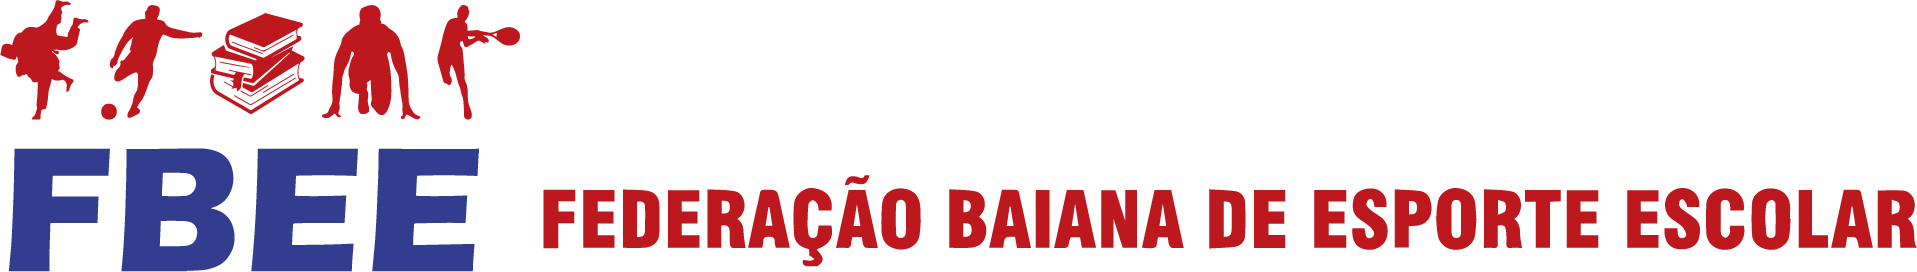 FBEE - Federação Baiana de Esporte Escolar